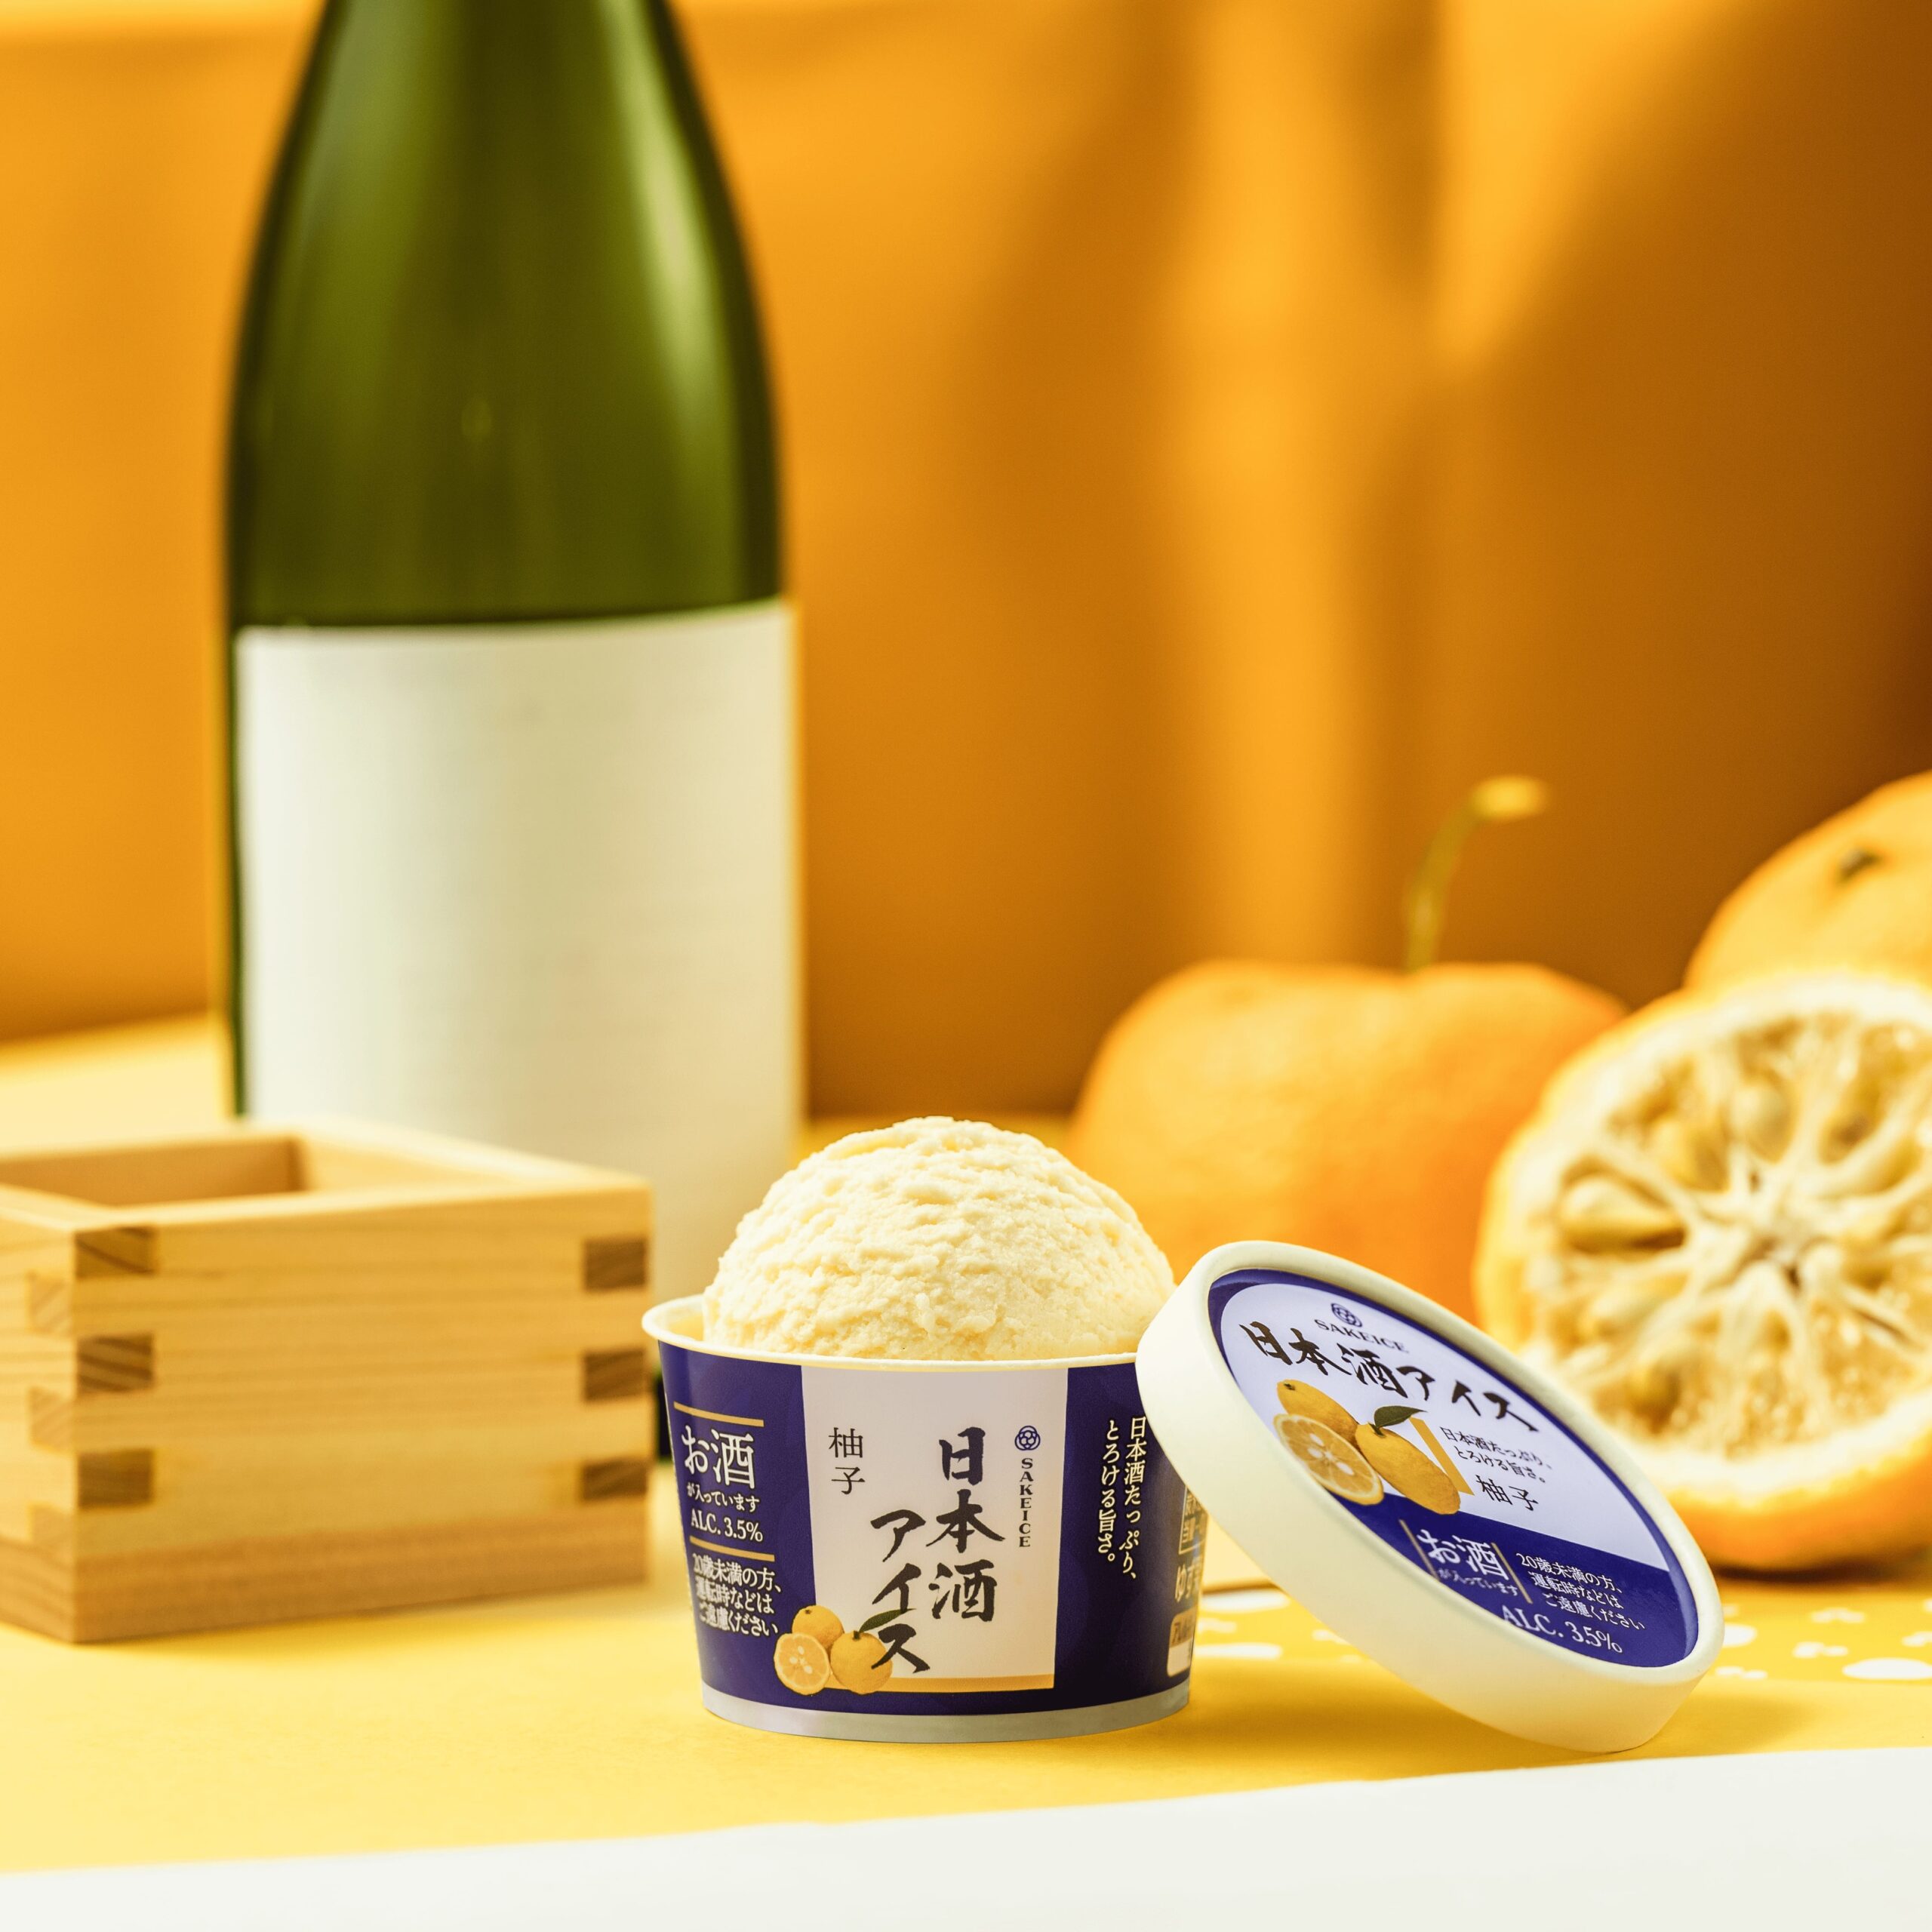 【ルミネ初出店】日本酒アイスクリーム専門店『SAKEICE（サケアイス）』がルミネ新宿でポップアップストアを2021年8月9日〜8月16日に限定OPEN